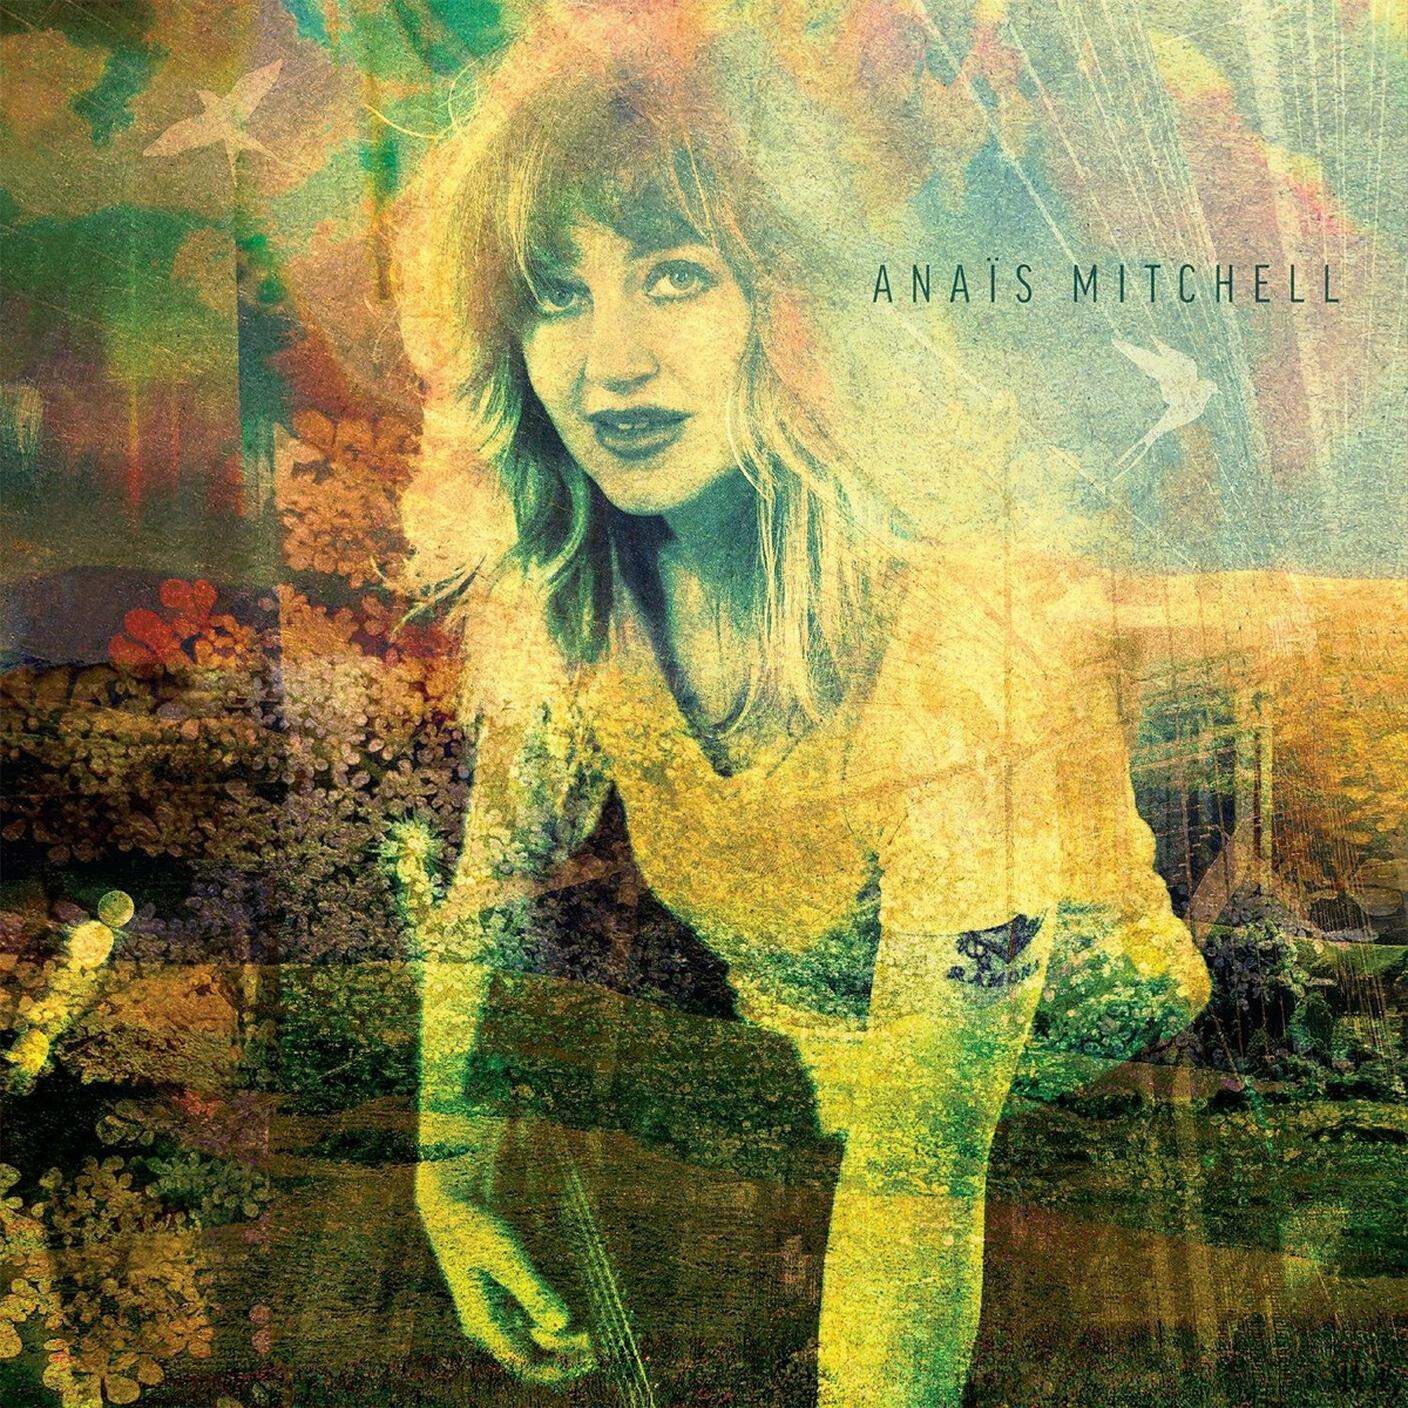 Anais Mitchell; "If it’s true"; Wilderland (dettaglio copertina)